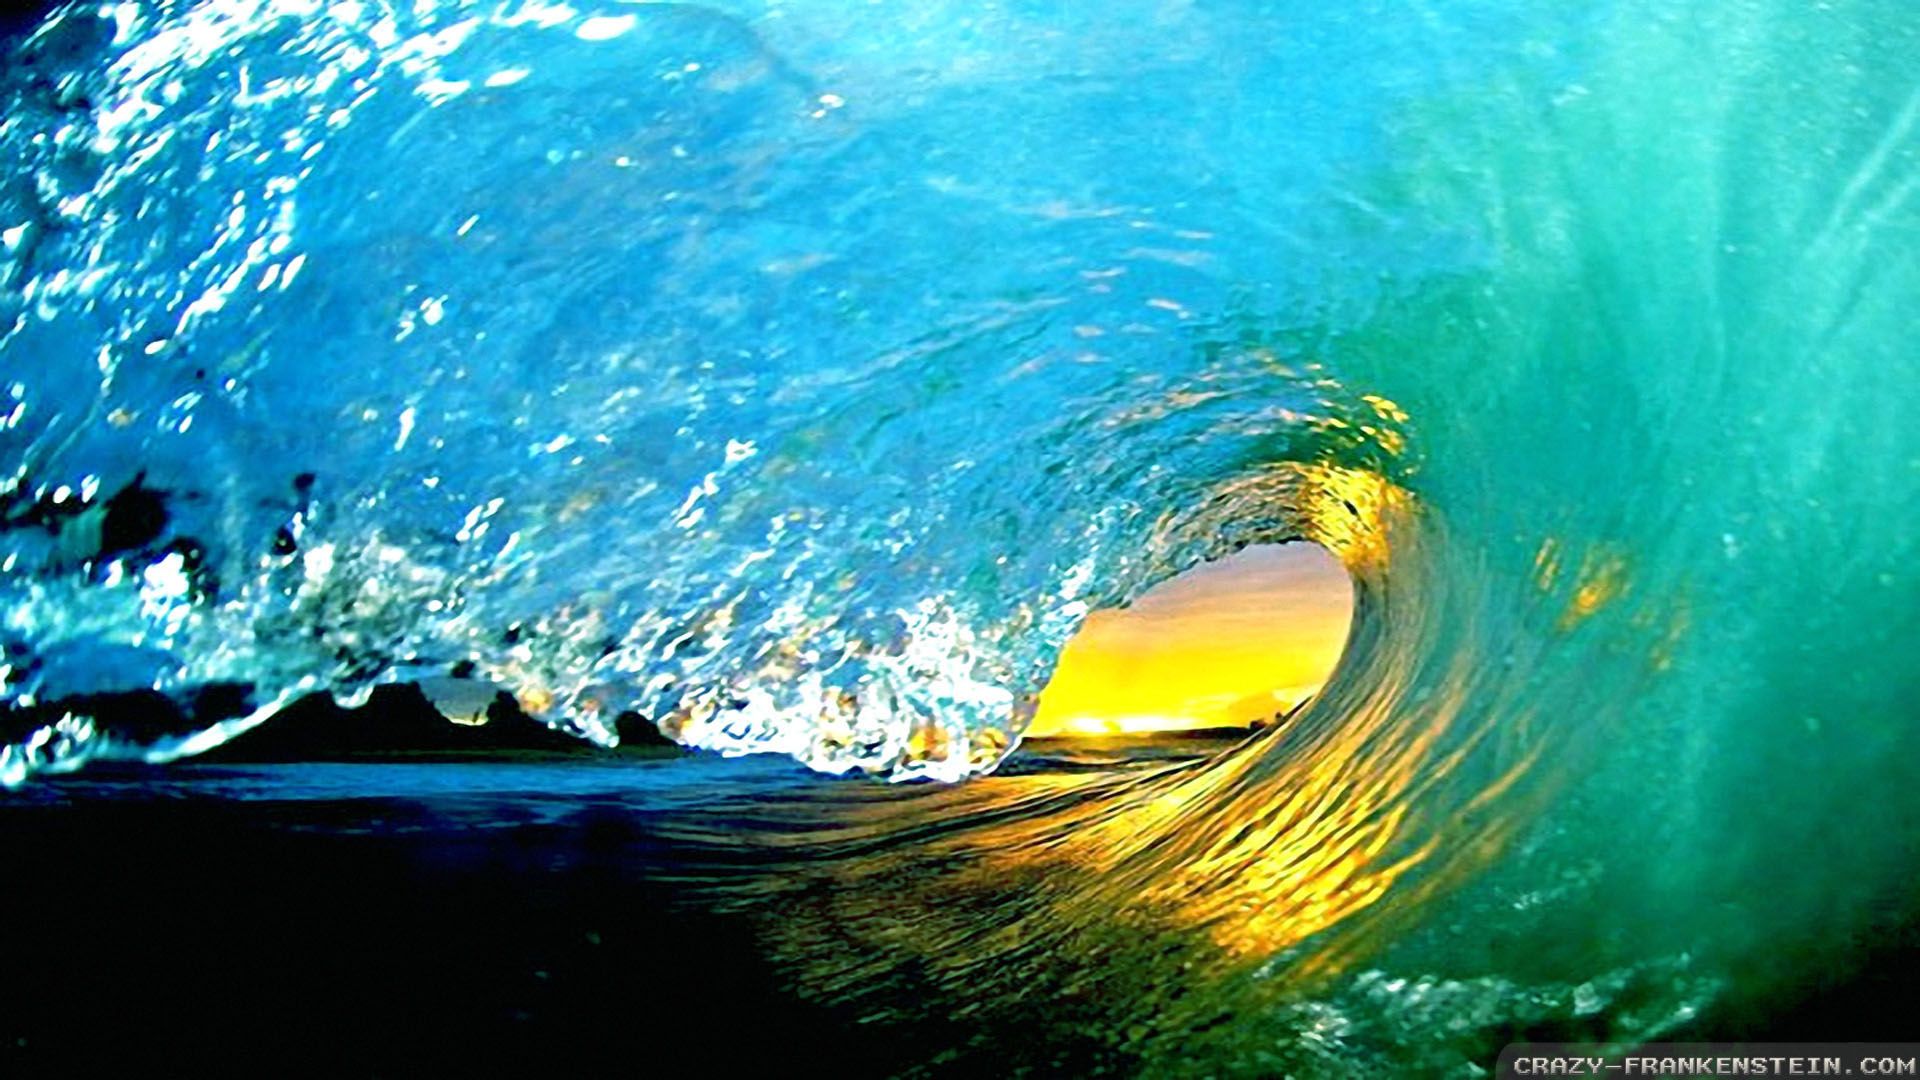 Summer Waves Wallpaper. Beach Waves